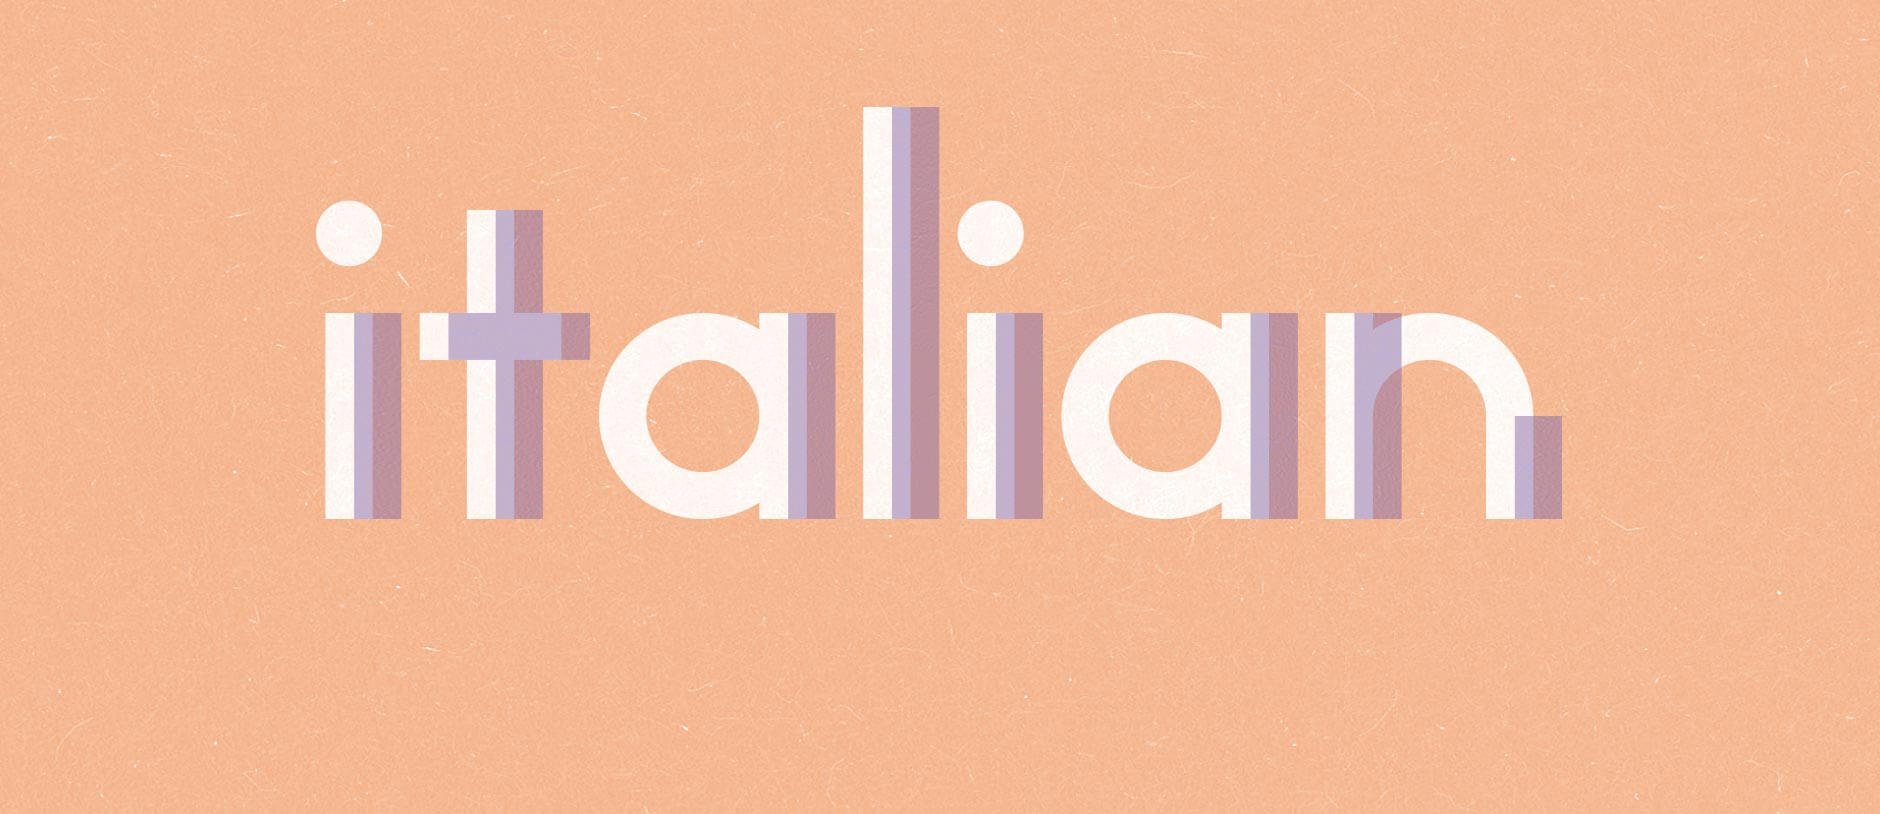 واقعیت هایی جالب در مورد زبان ایتالیایی که شما را شگفت زده می کنند